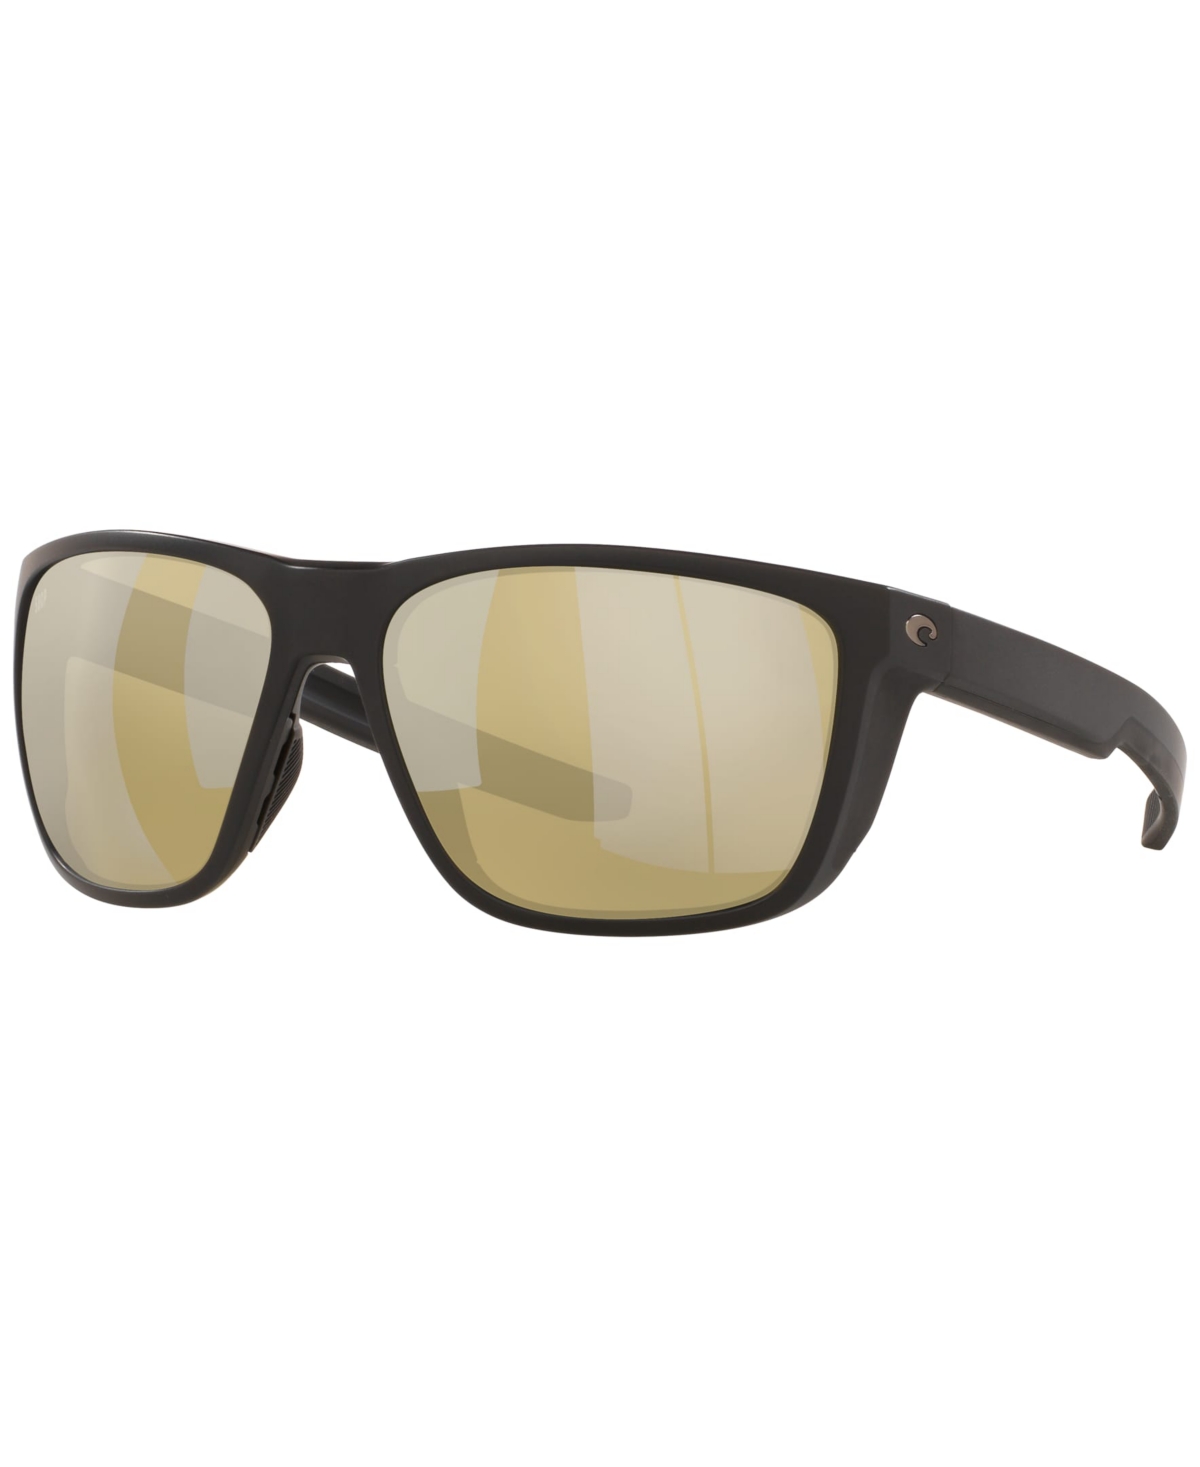 Men's Ferg 59 Polarized Sunglasses, Frg 11 Ossp - Matte Black